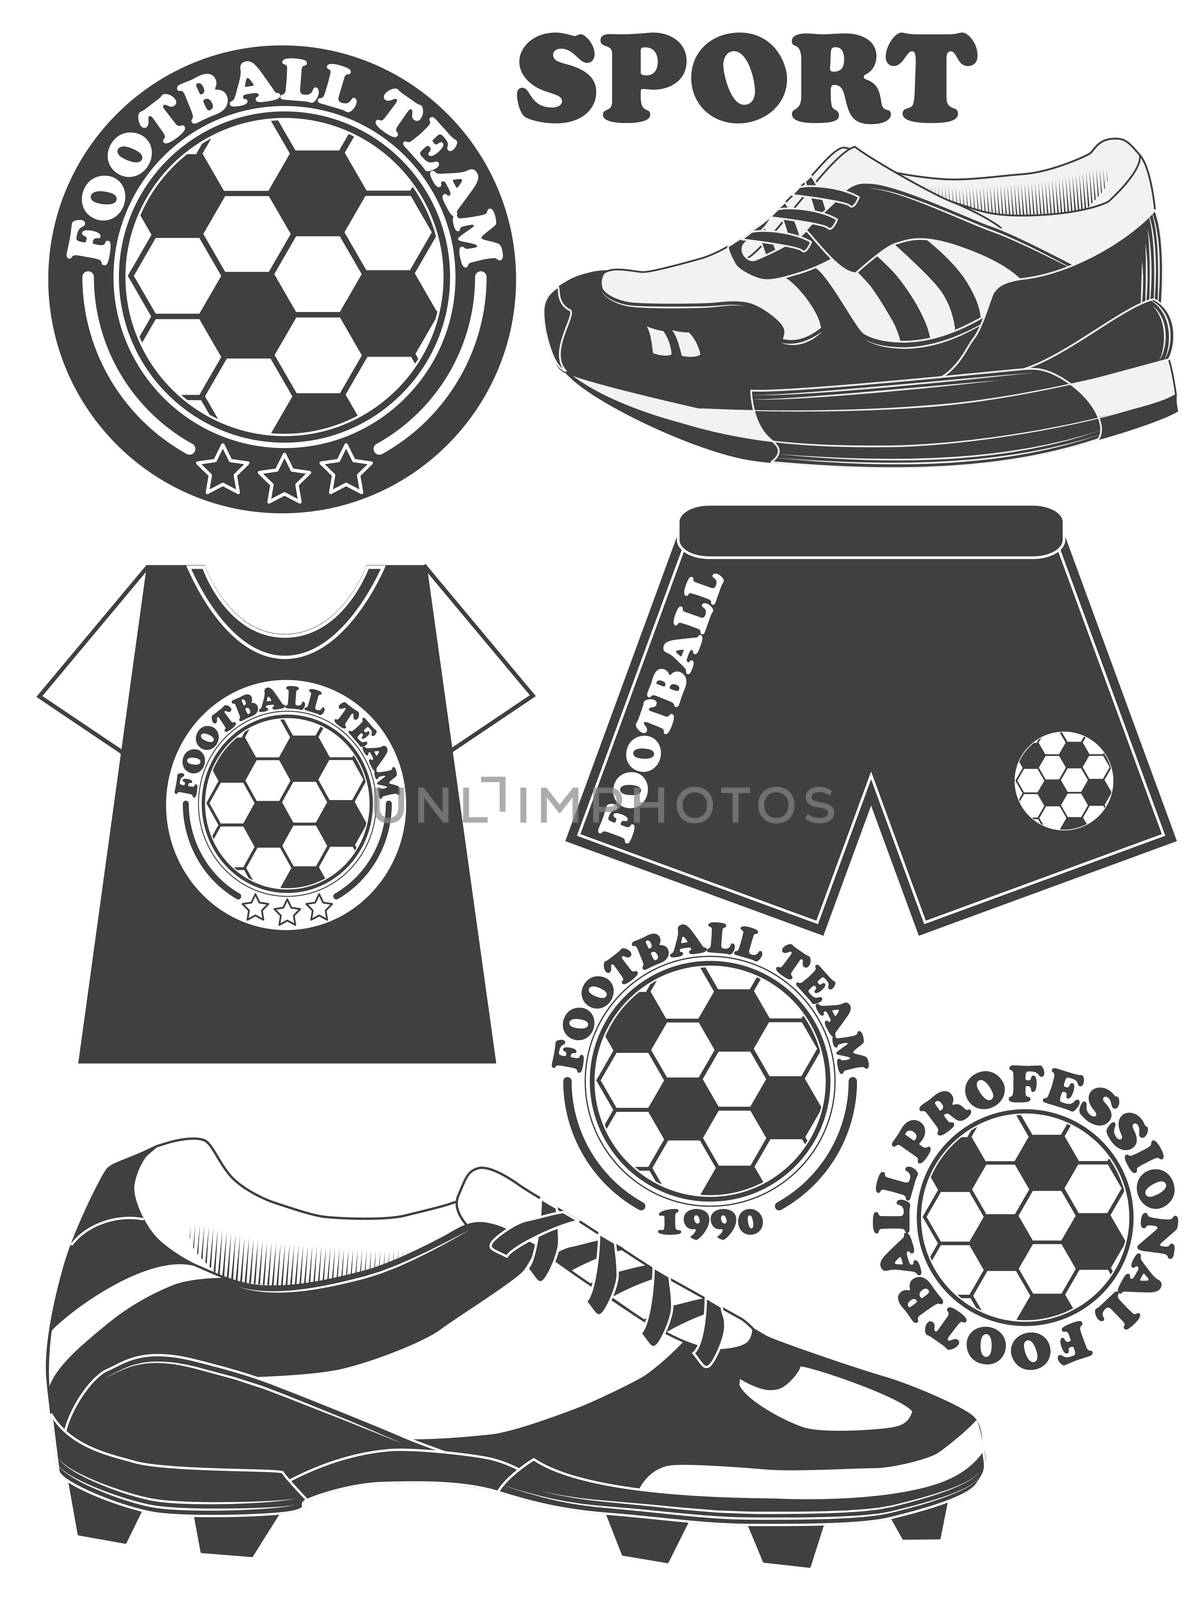 Set of football, soccer emblem design elements. illustration